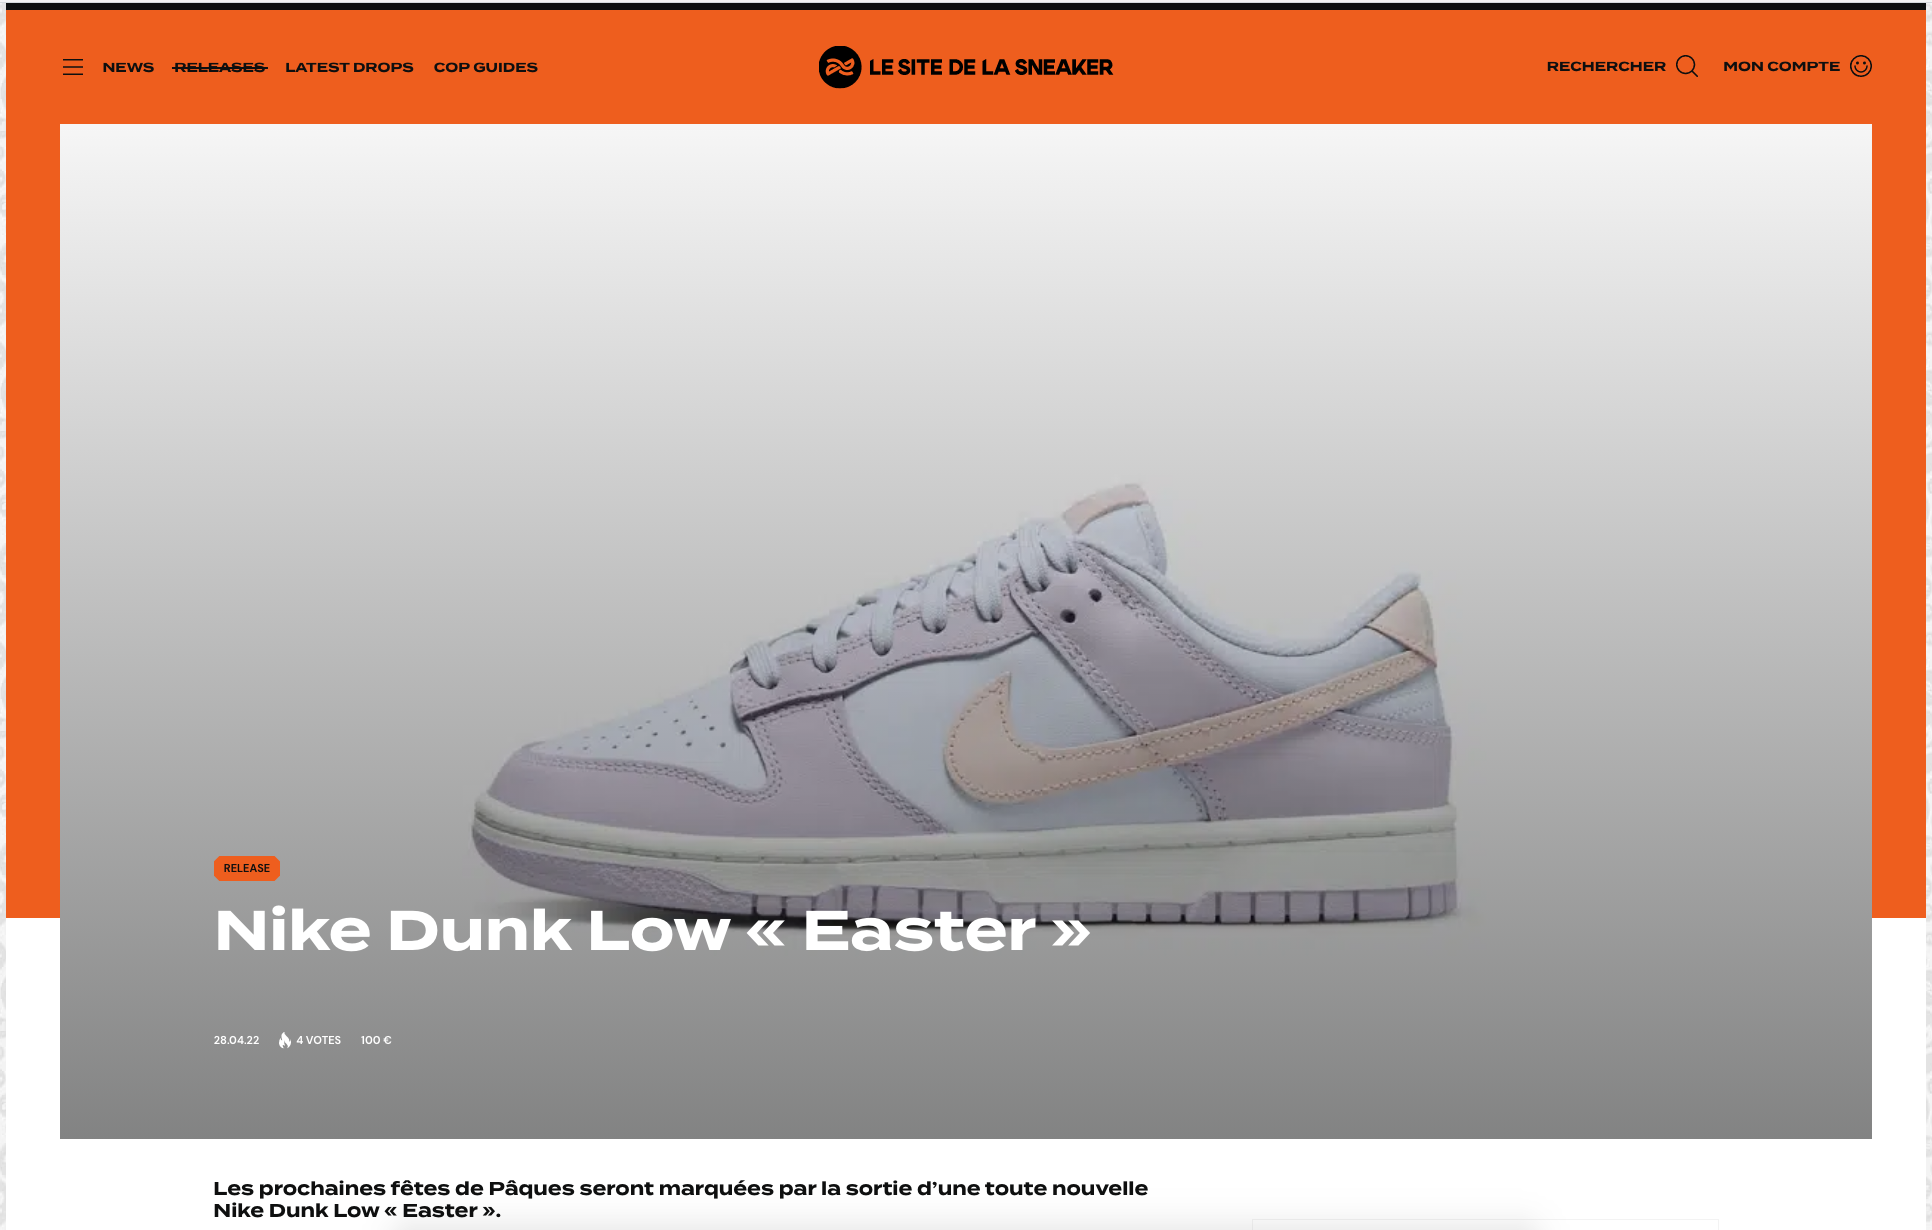 Page du site internet de "Le site de la sneaker" avec la paire de Nike Dunk Low de la collection de Pâques "Easter"